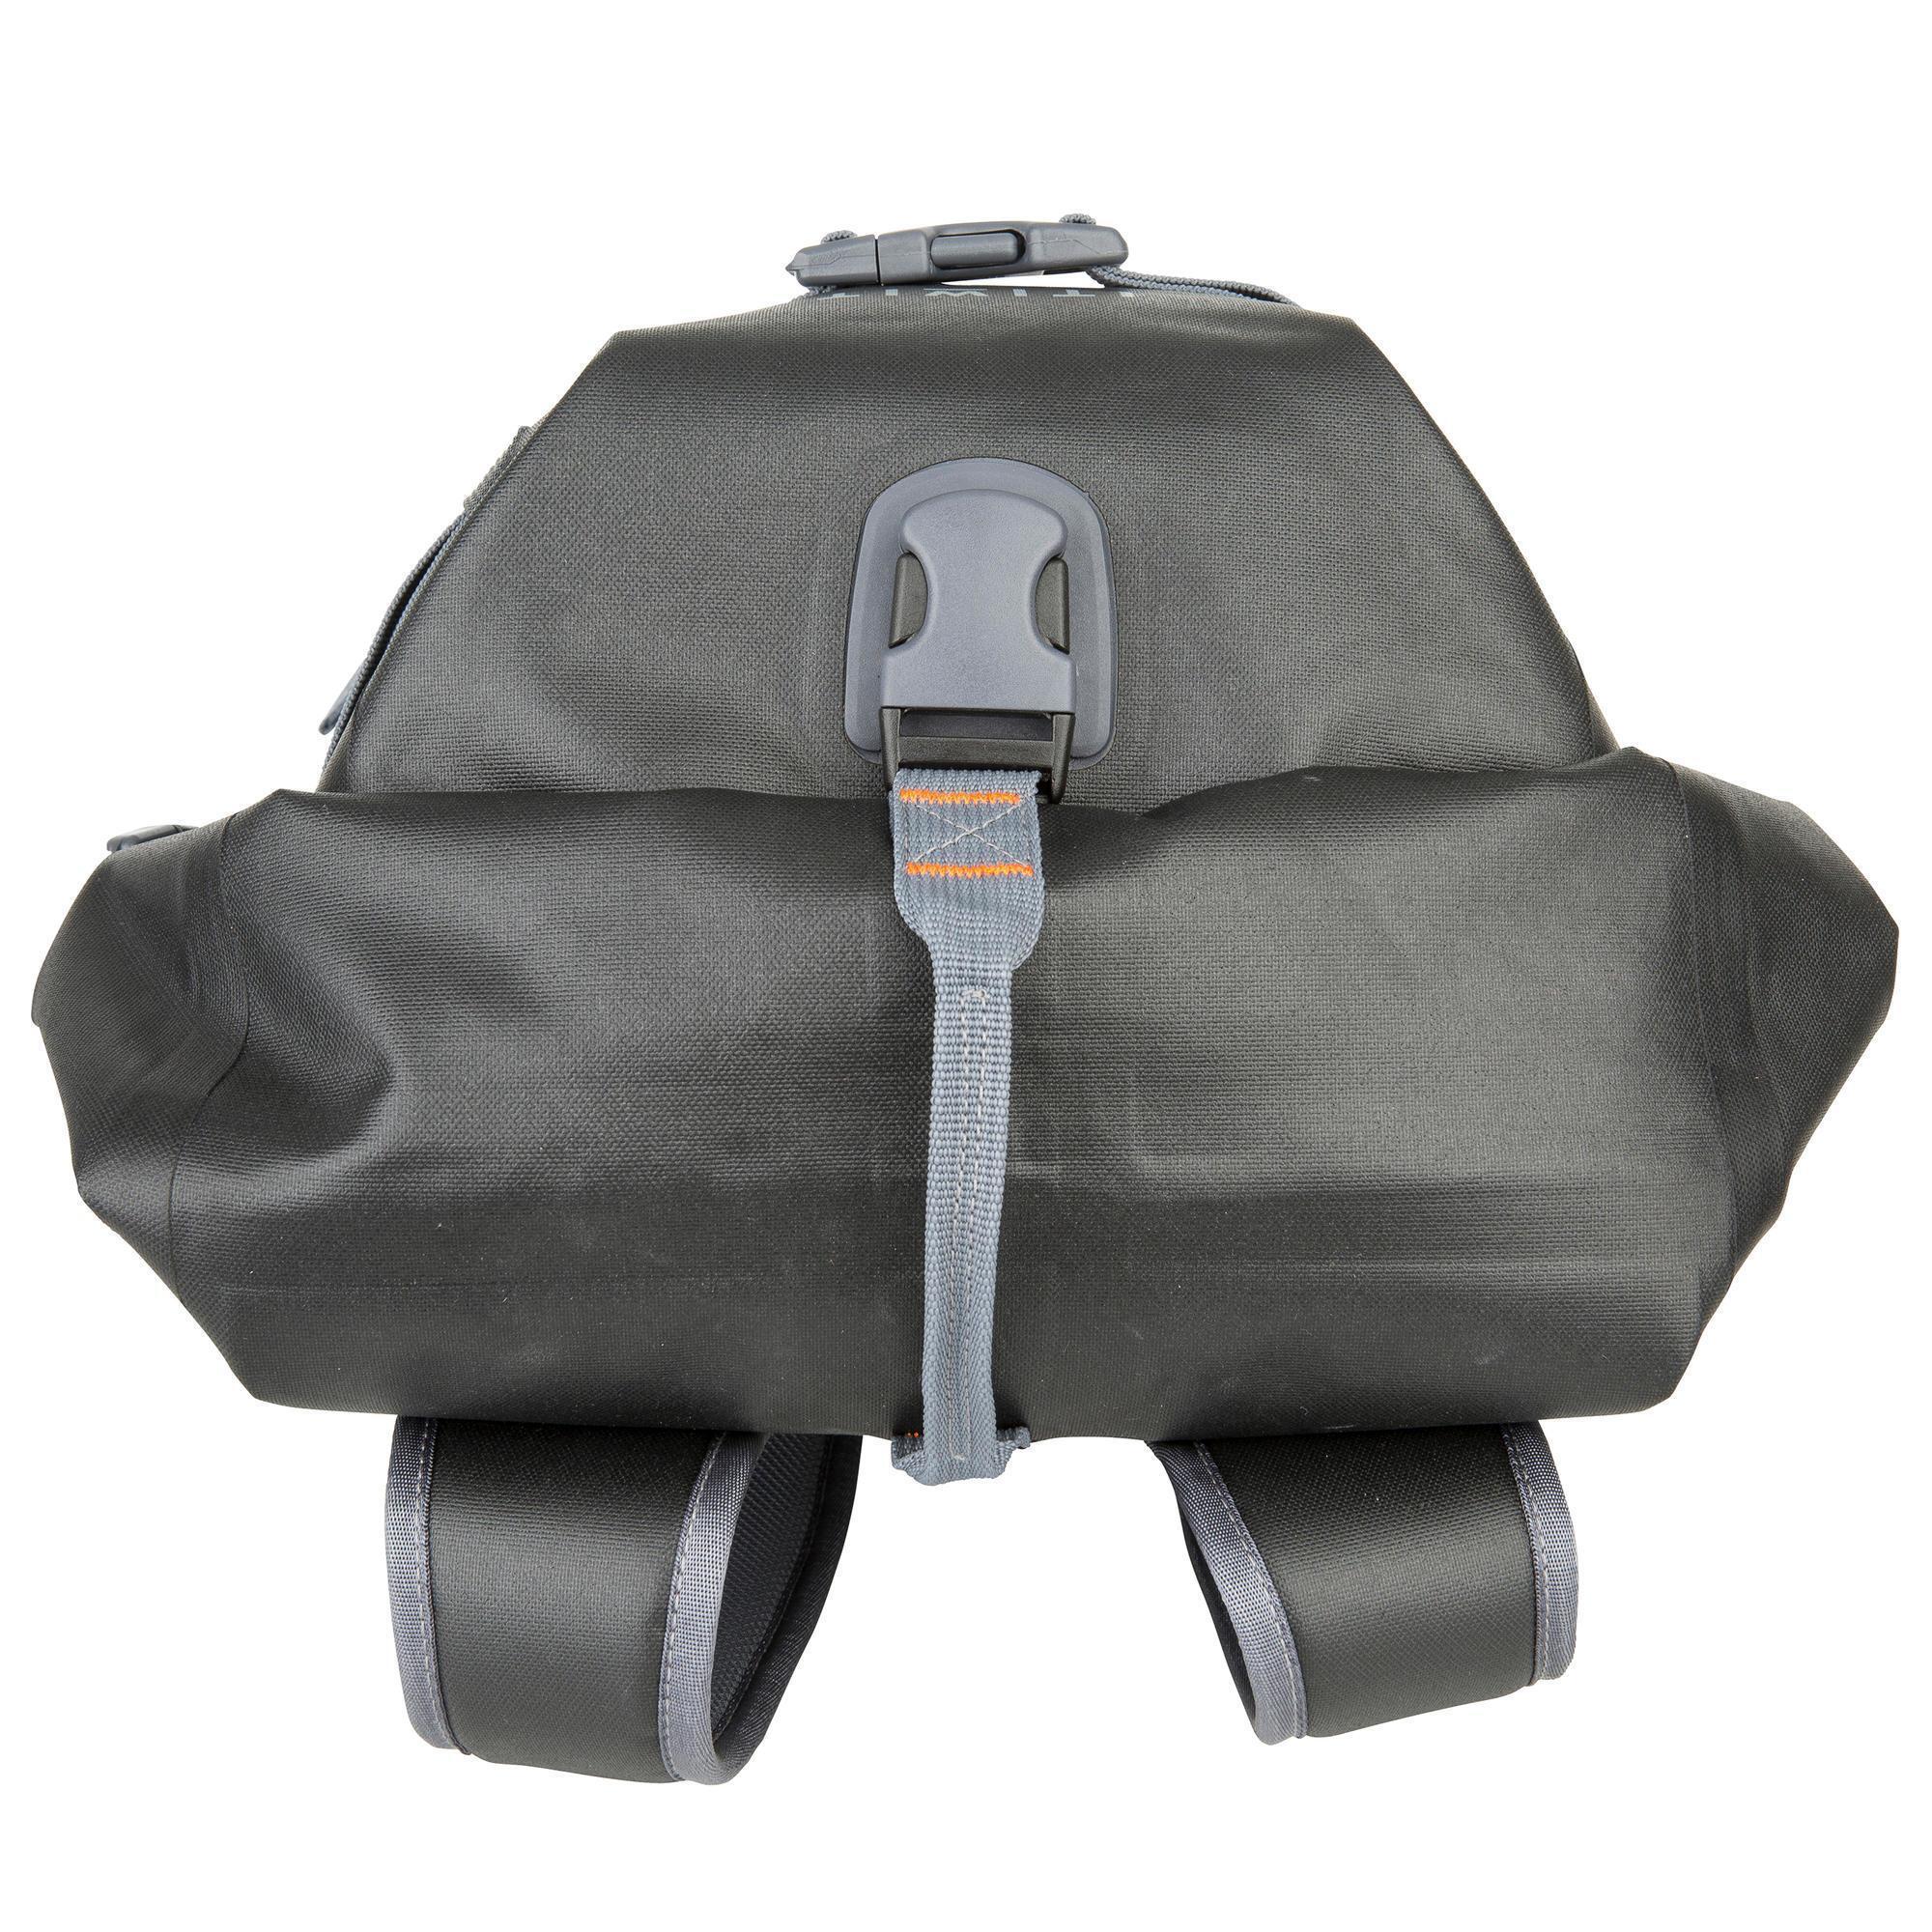 Waterproof Backpack 20L - Black 13/17